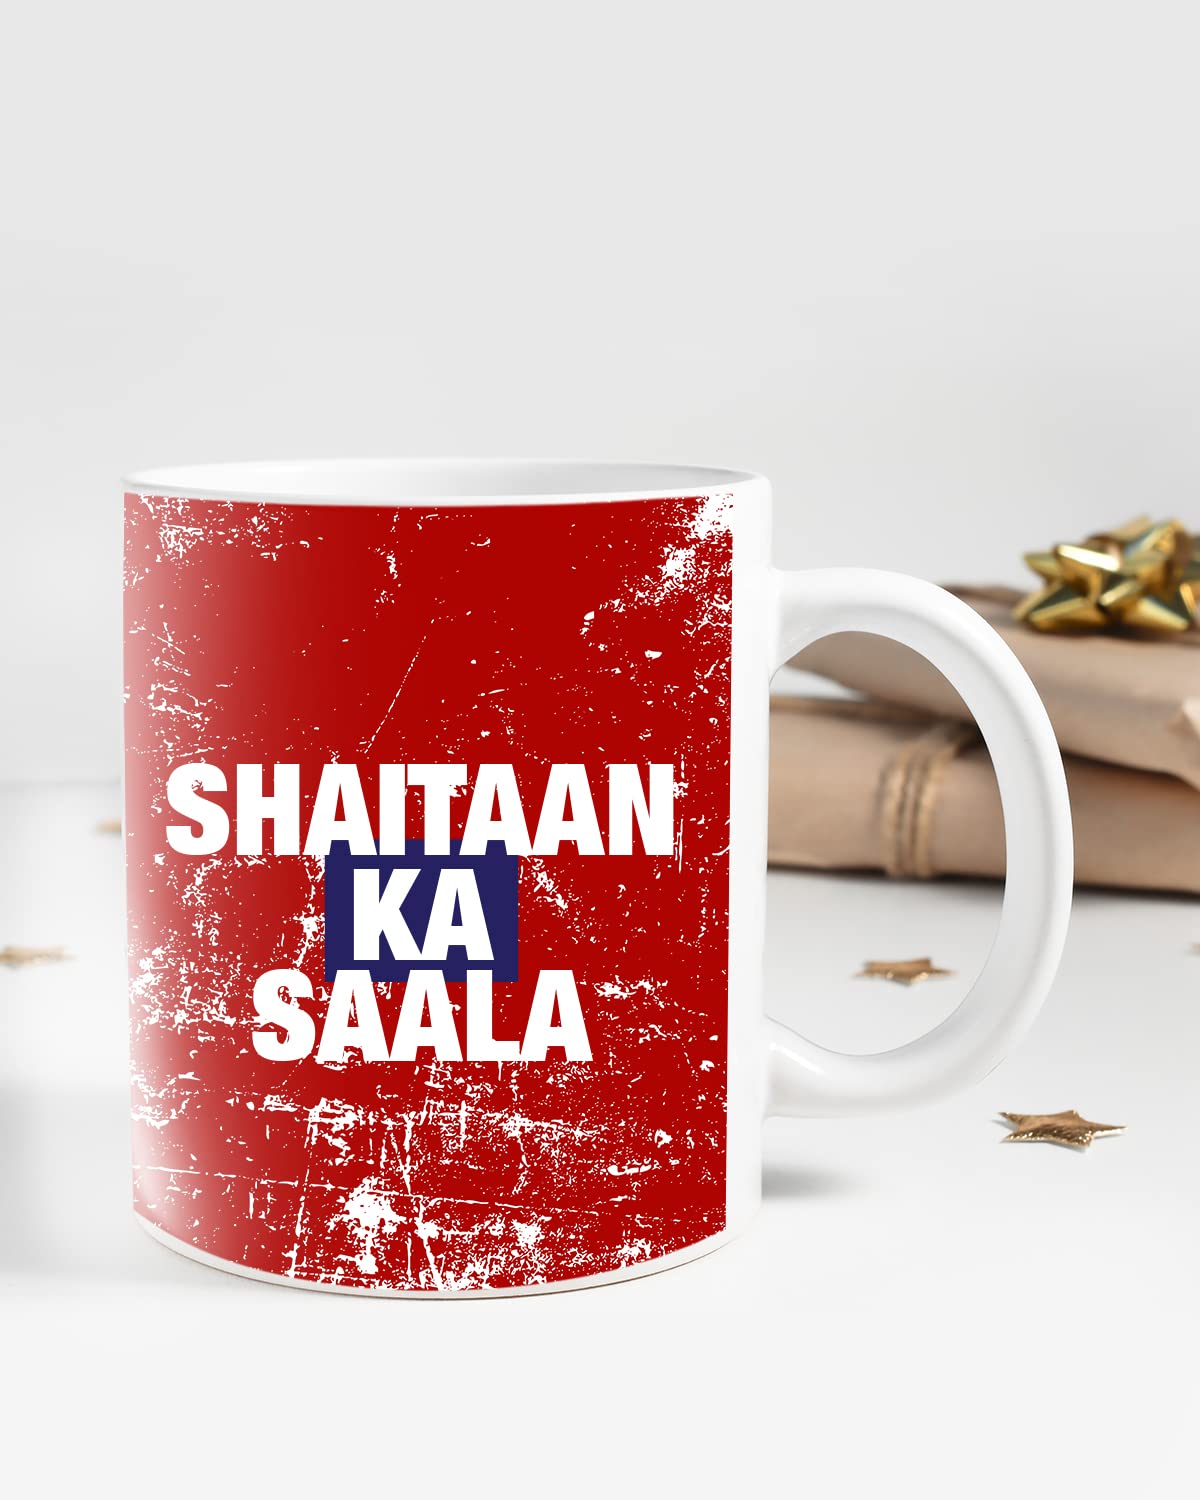 SHAITAAN KA SAALA Coffee Mug - Gift for Friend, Birthday Gift, Birthday Mug, Motivational Quotes Mug, Mugs with Funny & Funky Dialogues, Bollywood Mugs, Funny Mugs for Him & Her